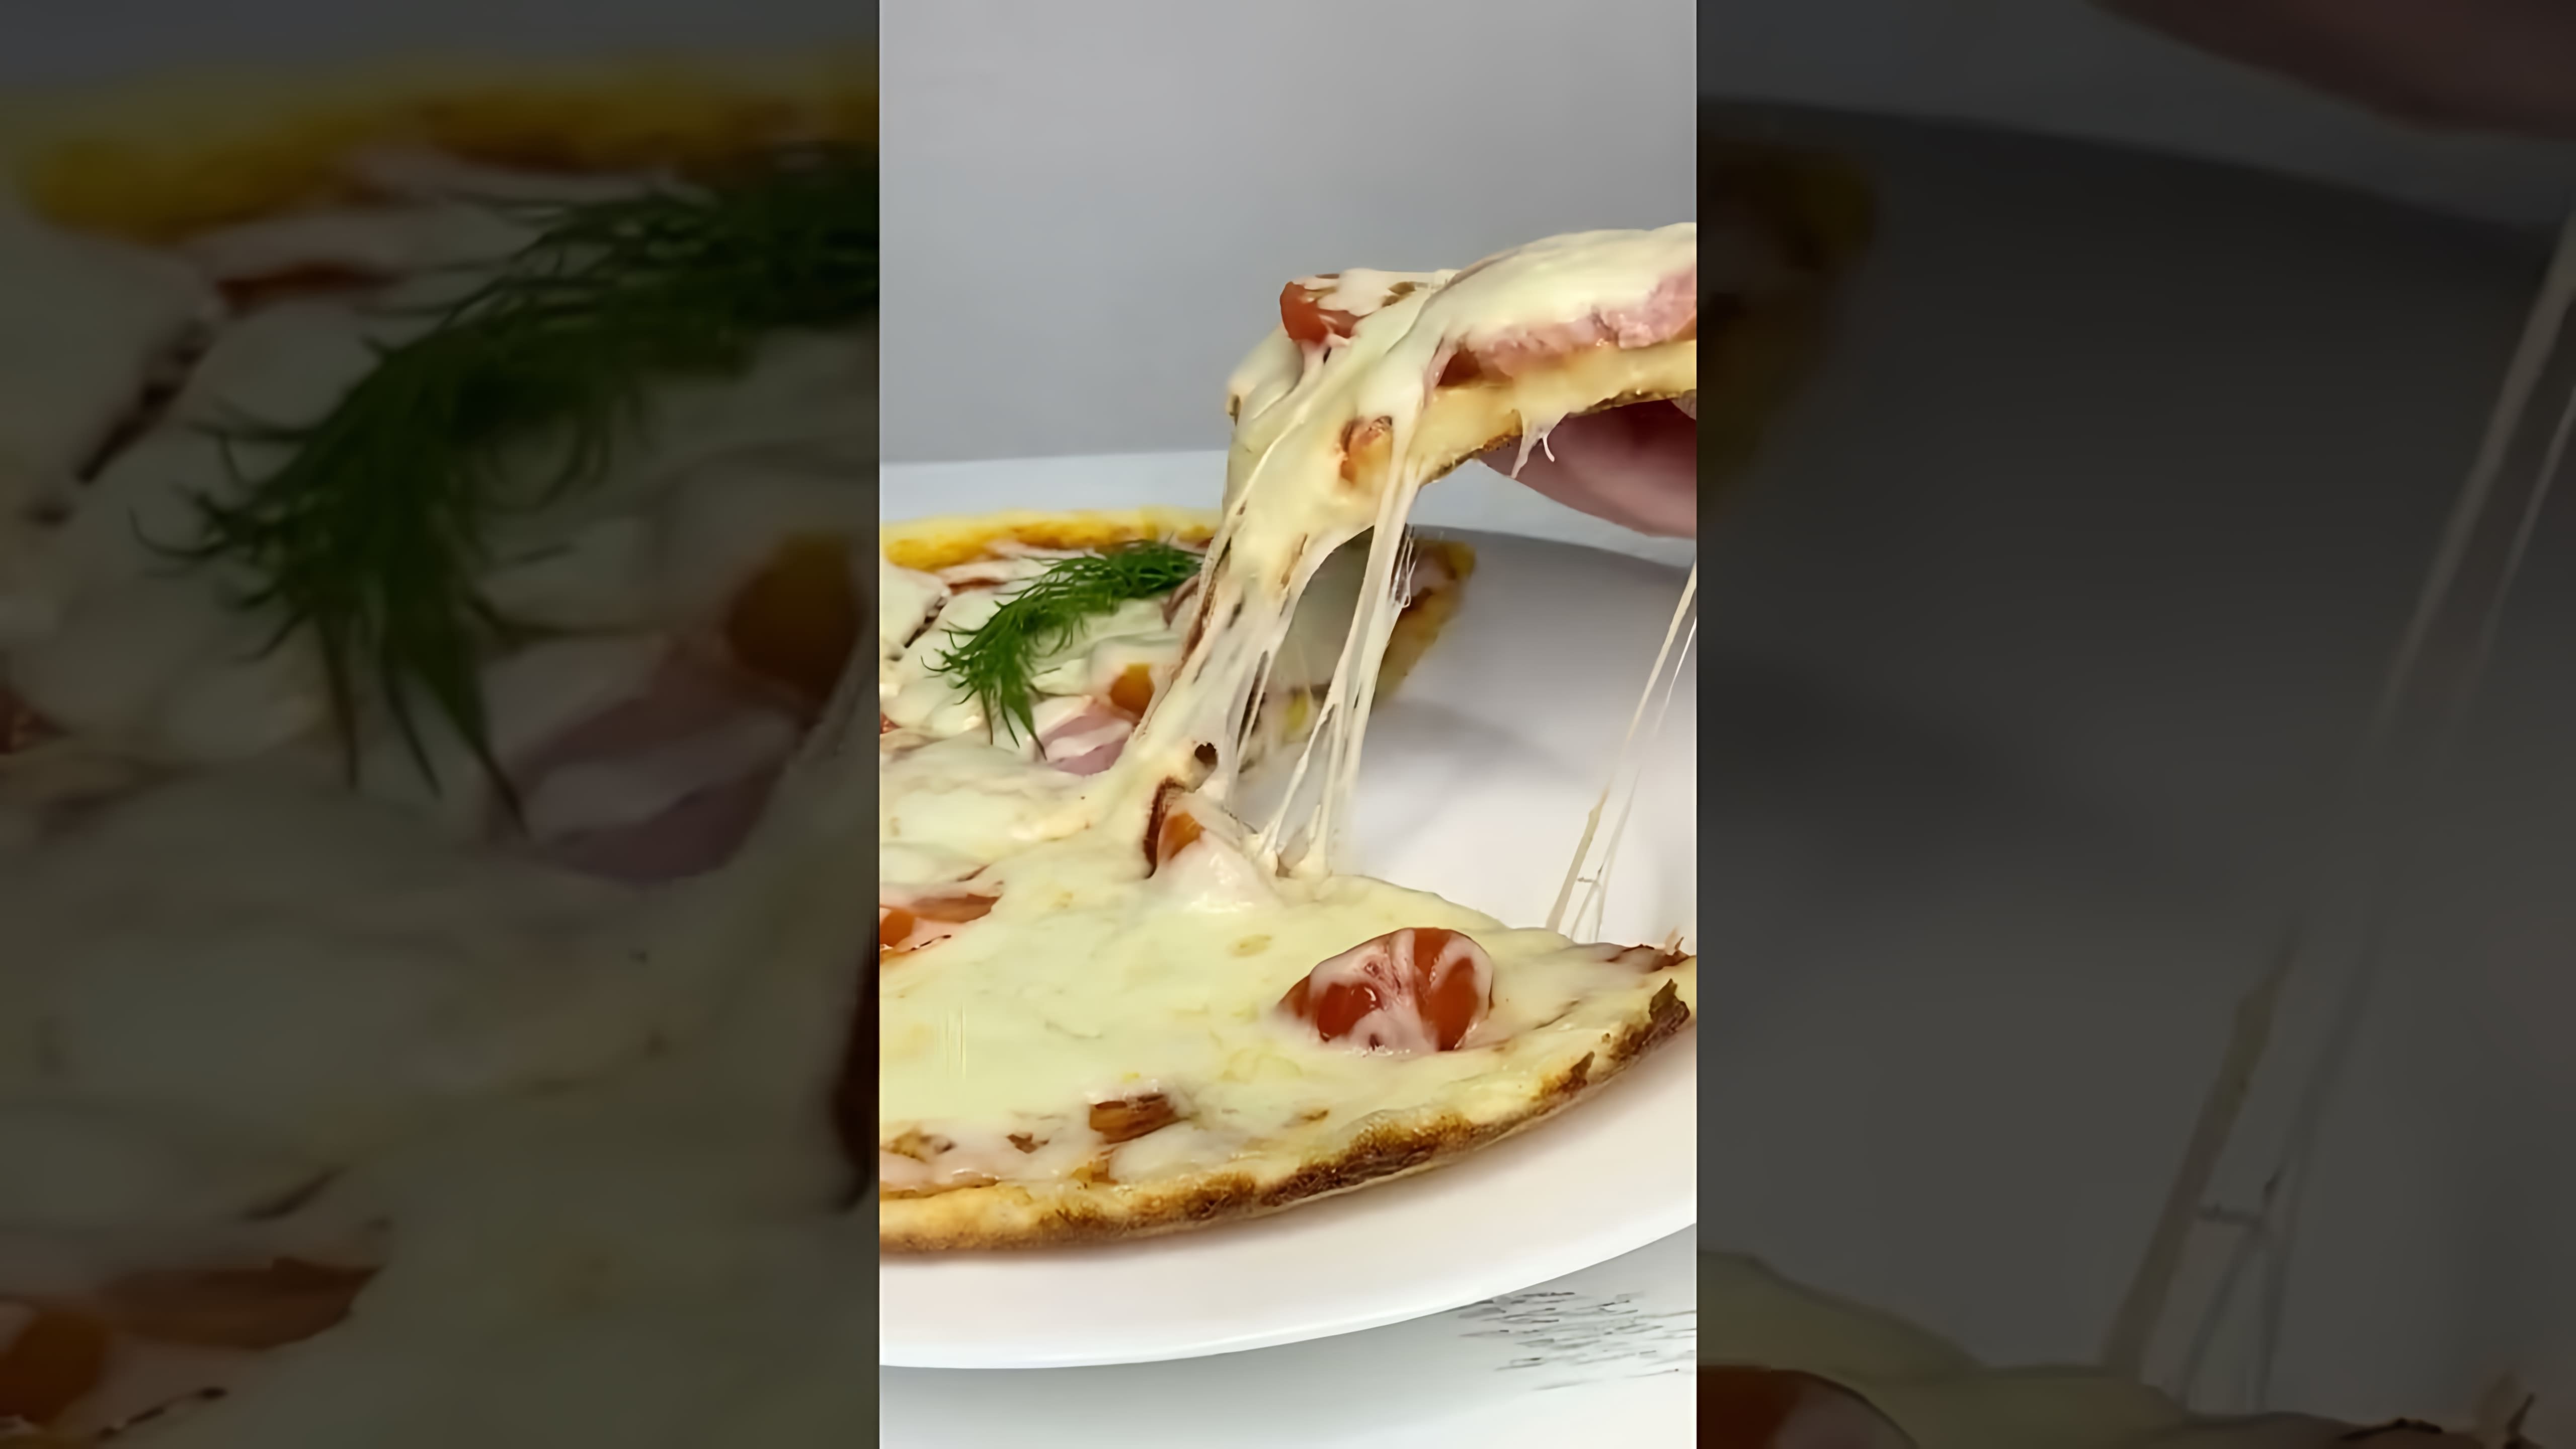 В этом видео демонстрируется процесс приготовления пиццы на сковороде